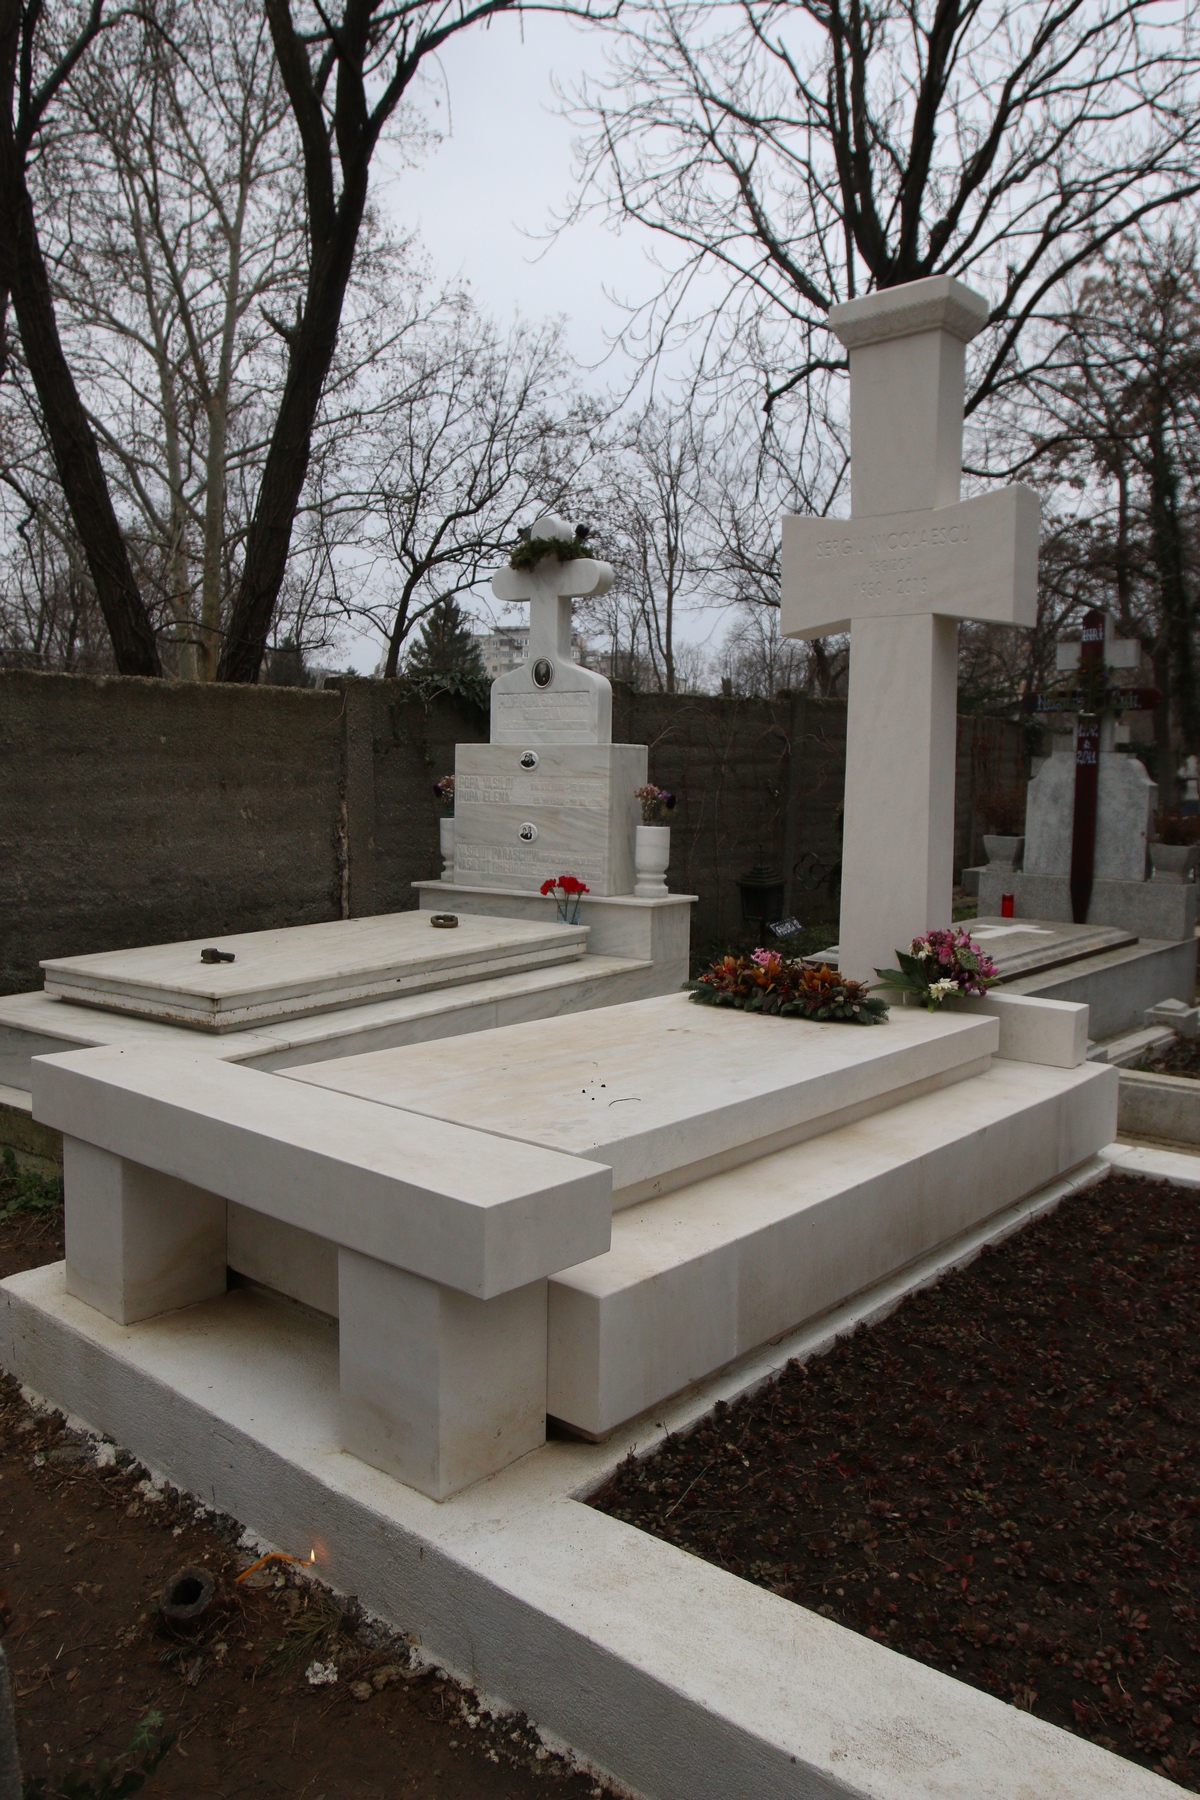 Monumentul funerar al lui Sergiu Nicolaescu este mereu curat si florile sunt aranjate